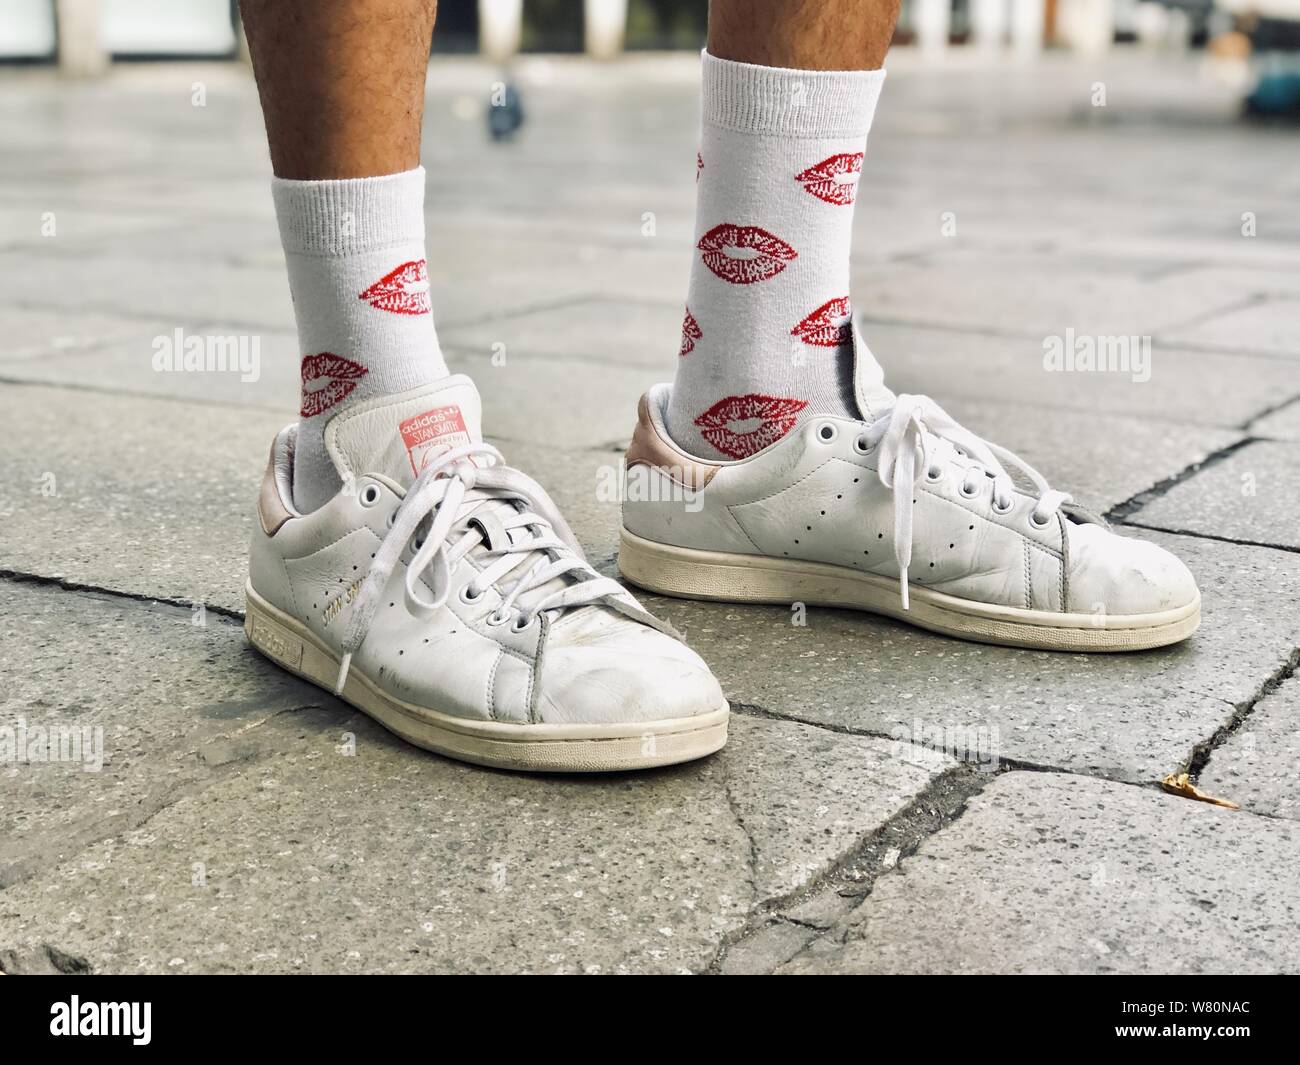 socks for white sneakers